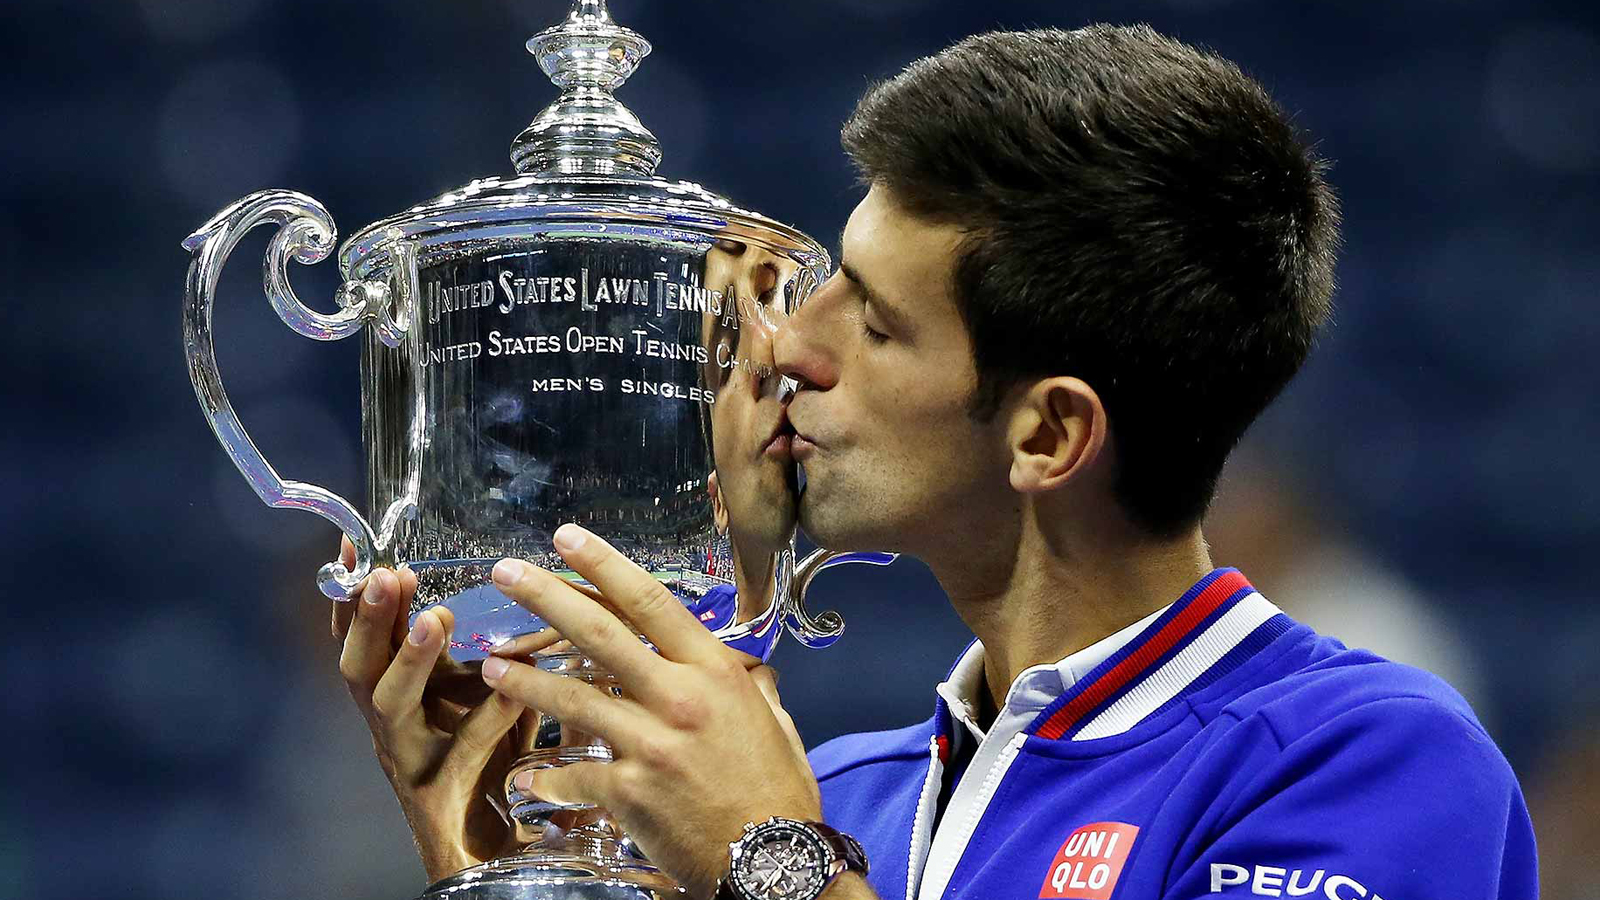 Djokovic và ngưỡng cửa lịch sử ở US Open 2020 - 6